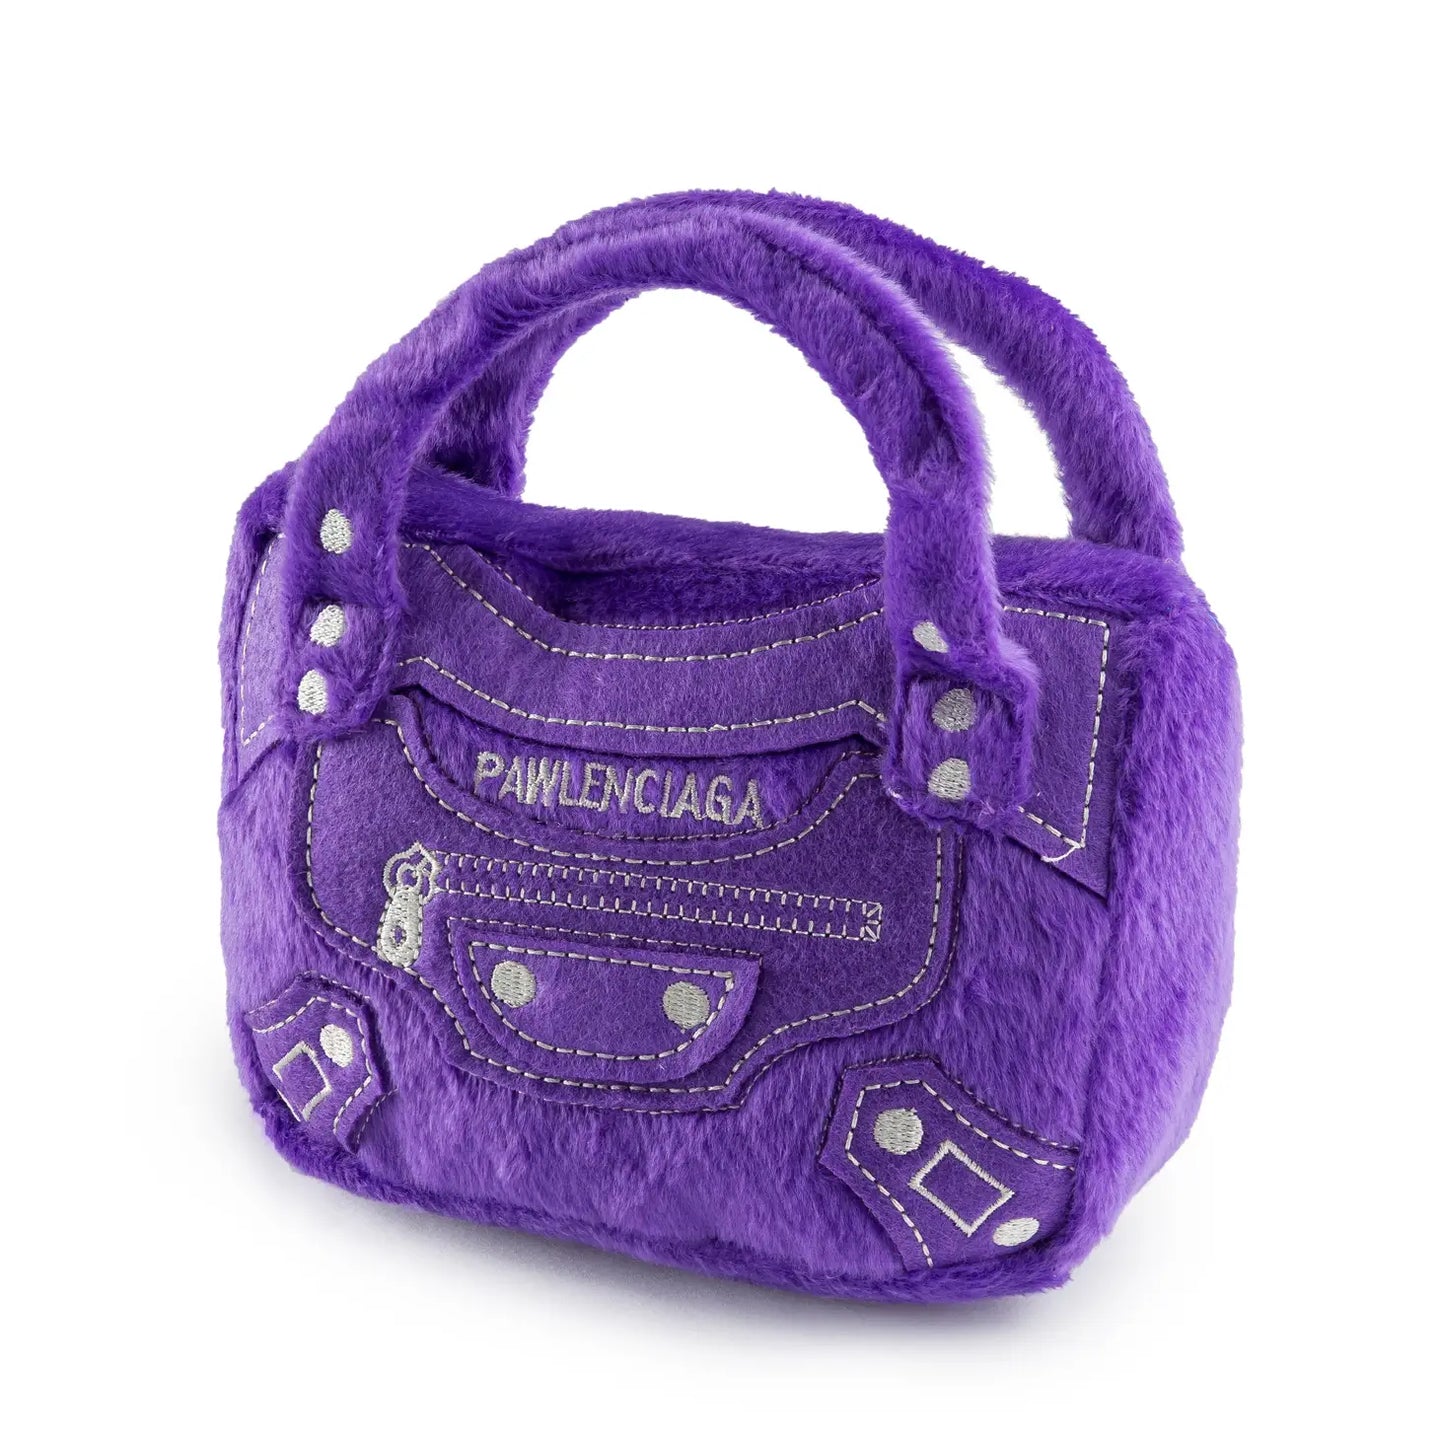 Pawlenciaga Handbag Plush Dog Toy